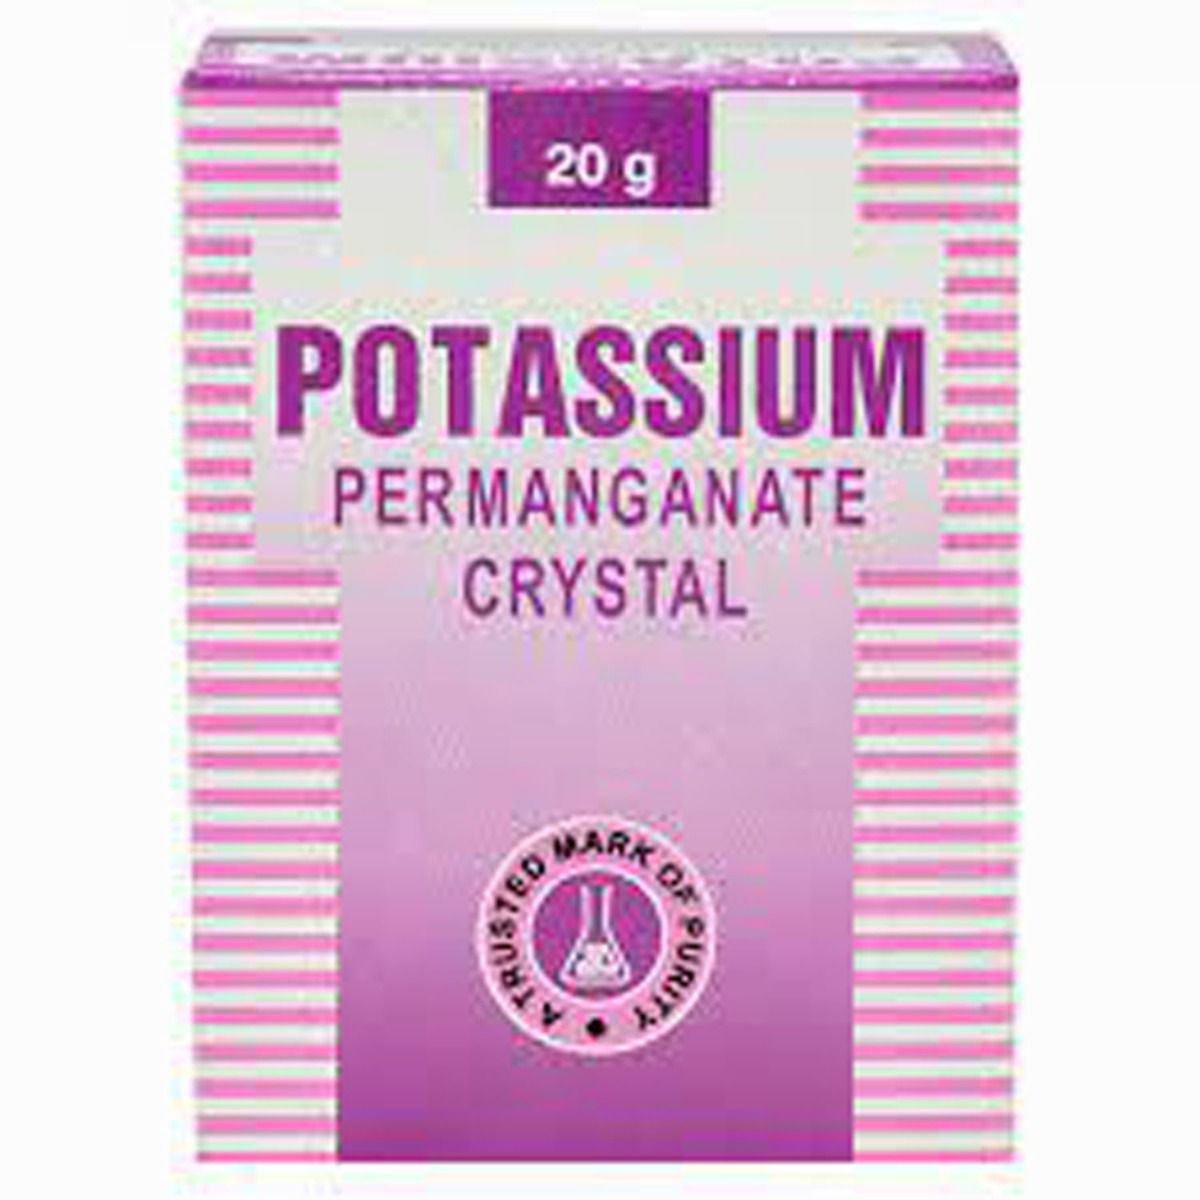 Buy Potassium Permanganate Powder 20 gm Online